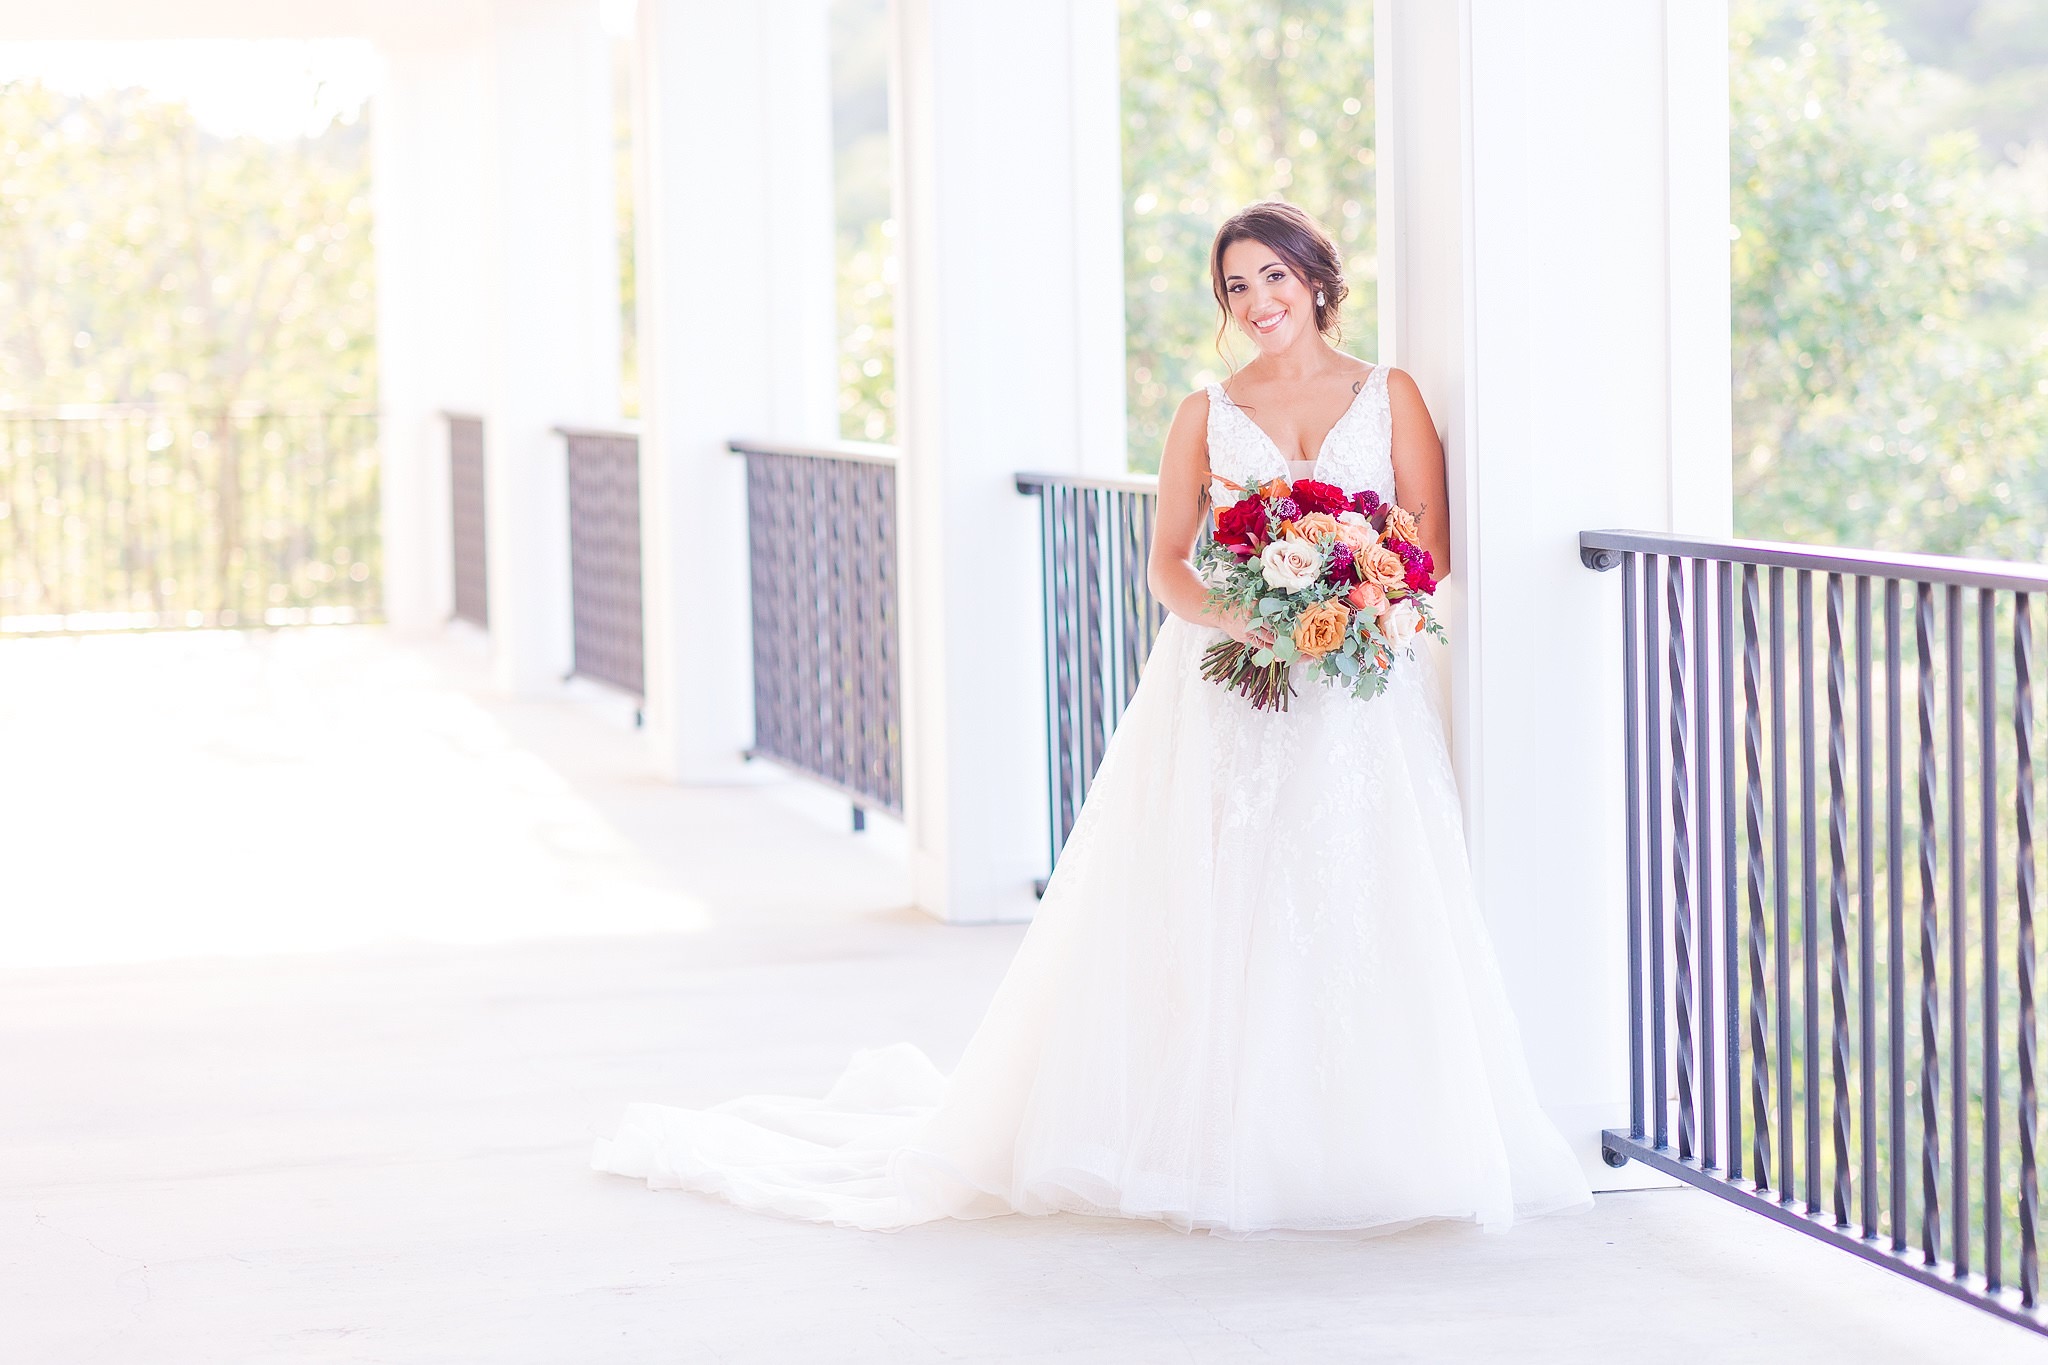 Bridal Session at Kendall Point by Dawn Elizabeth Studios, San Antonio Wedding Photographer